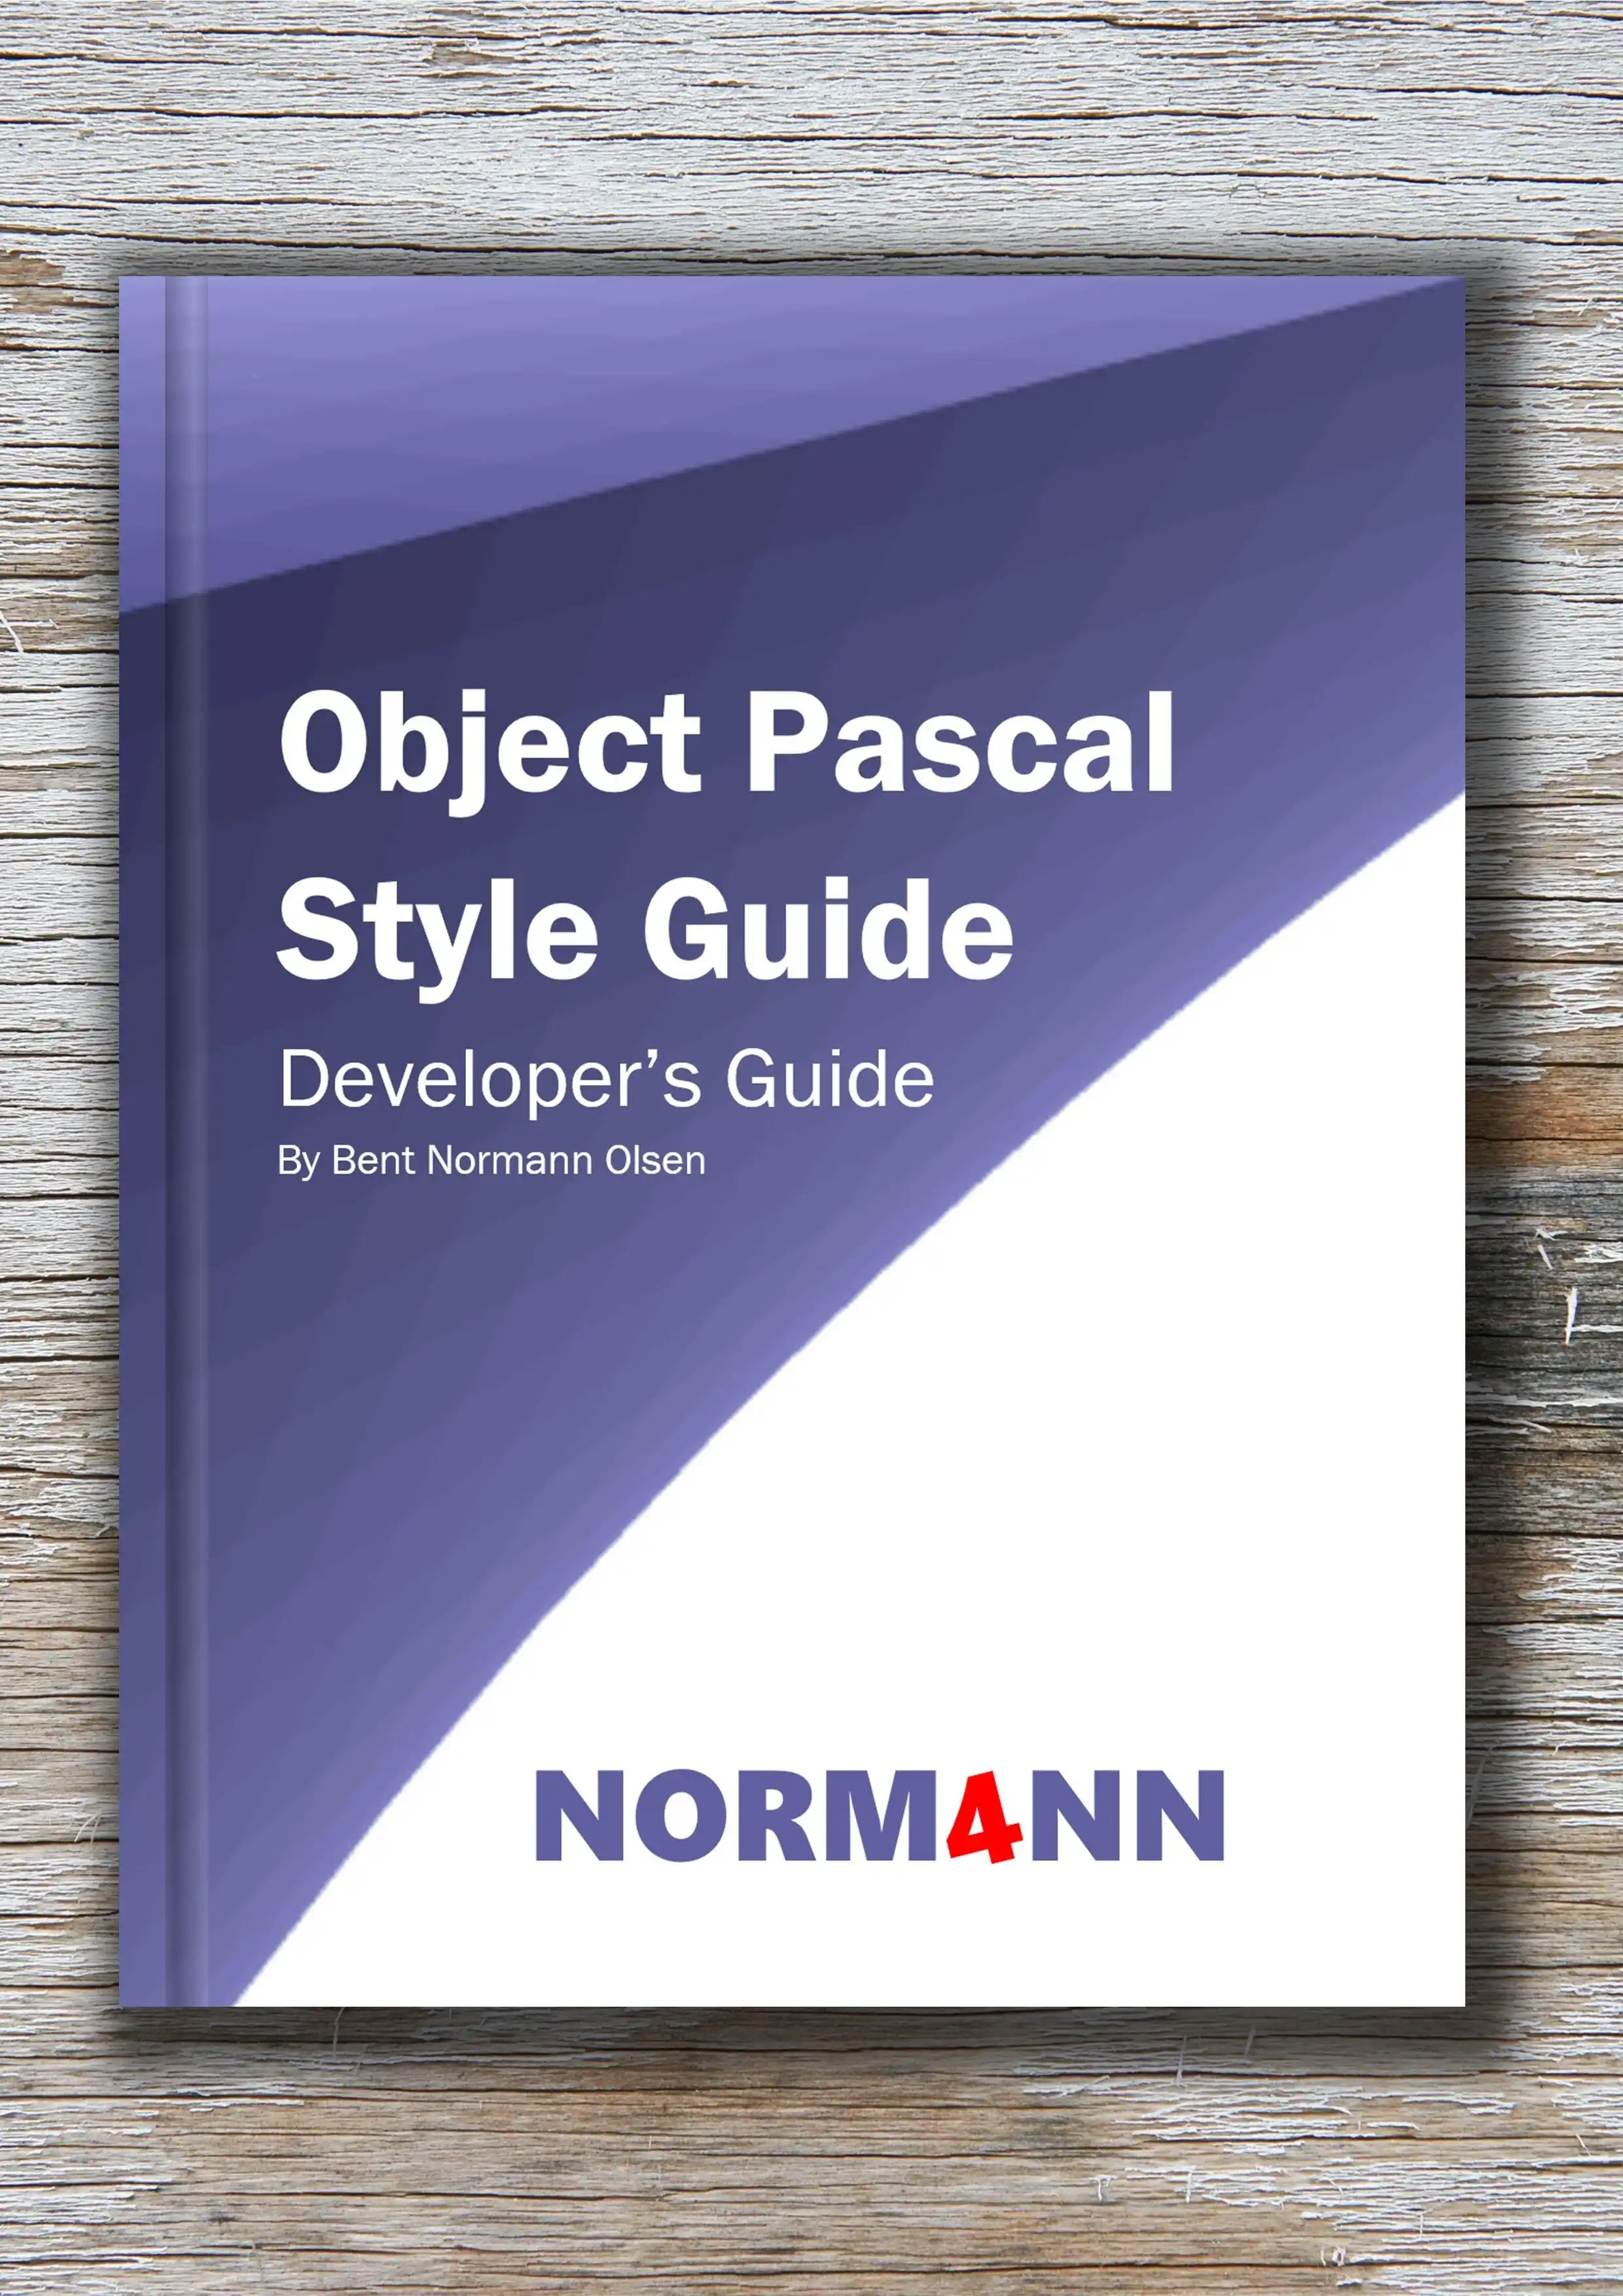 ດາວ​ນ​໌​ໂຫລດ​ເຄື່ອງ​ມື​ເວັບ​ໄຊ​ຕ​໌​ຫຼື​ຄູ່​ມື app ເວັບ​ໄຊ​ຕ​໌​ກ່ຽວ​ກັບ Object Pascal Style Guide​